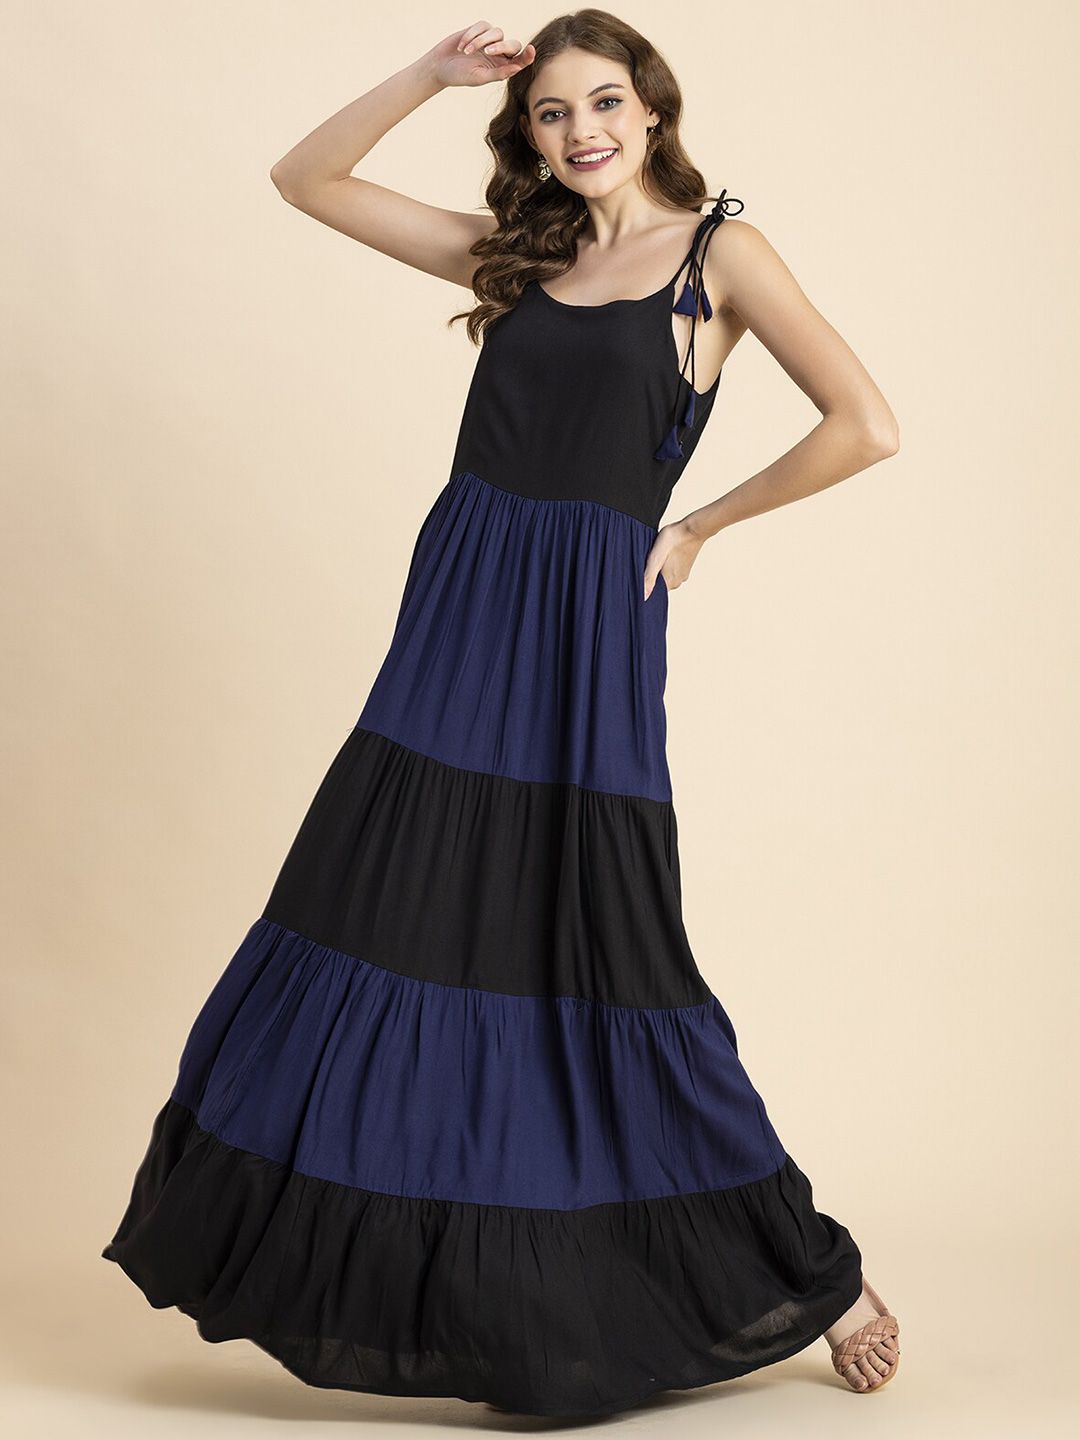 PURSHOTTAM WALA Blue Off-Shoulder Fit & Flare Dress Price in India